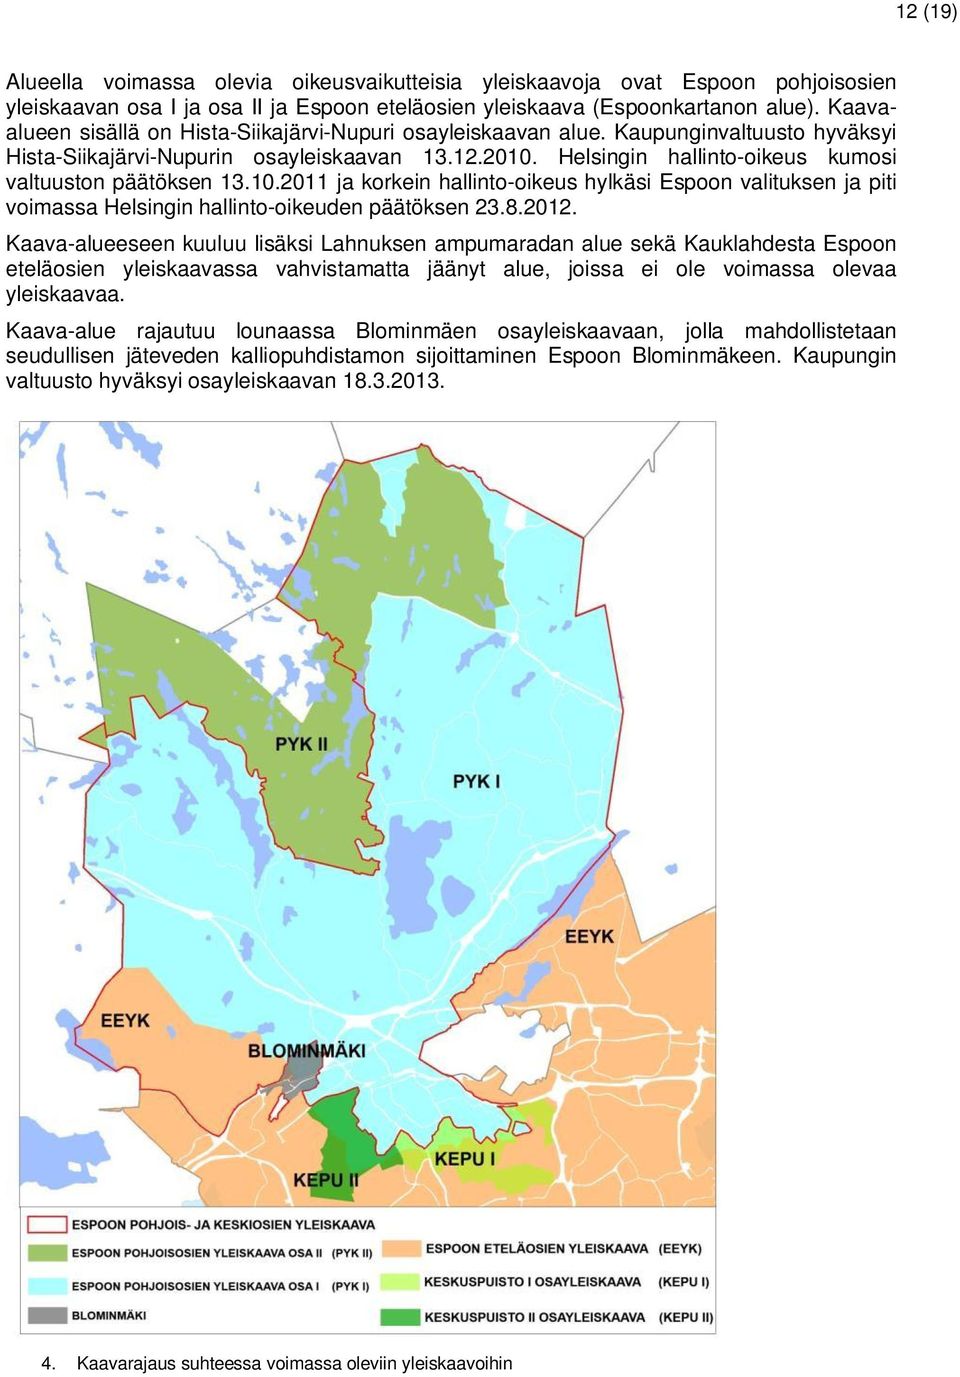 Helsingin hallinto-oikeus kumosi valtuuston päätöksen 13.10.2011 ja korkein hallinto-oikeus hylkäsi Espoon valituksen ja piti voimassa Helsingin hallinto-oikeuden päätöksen 23.8.2012.